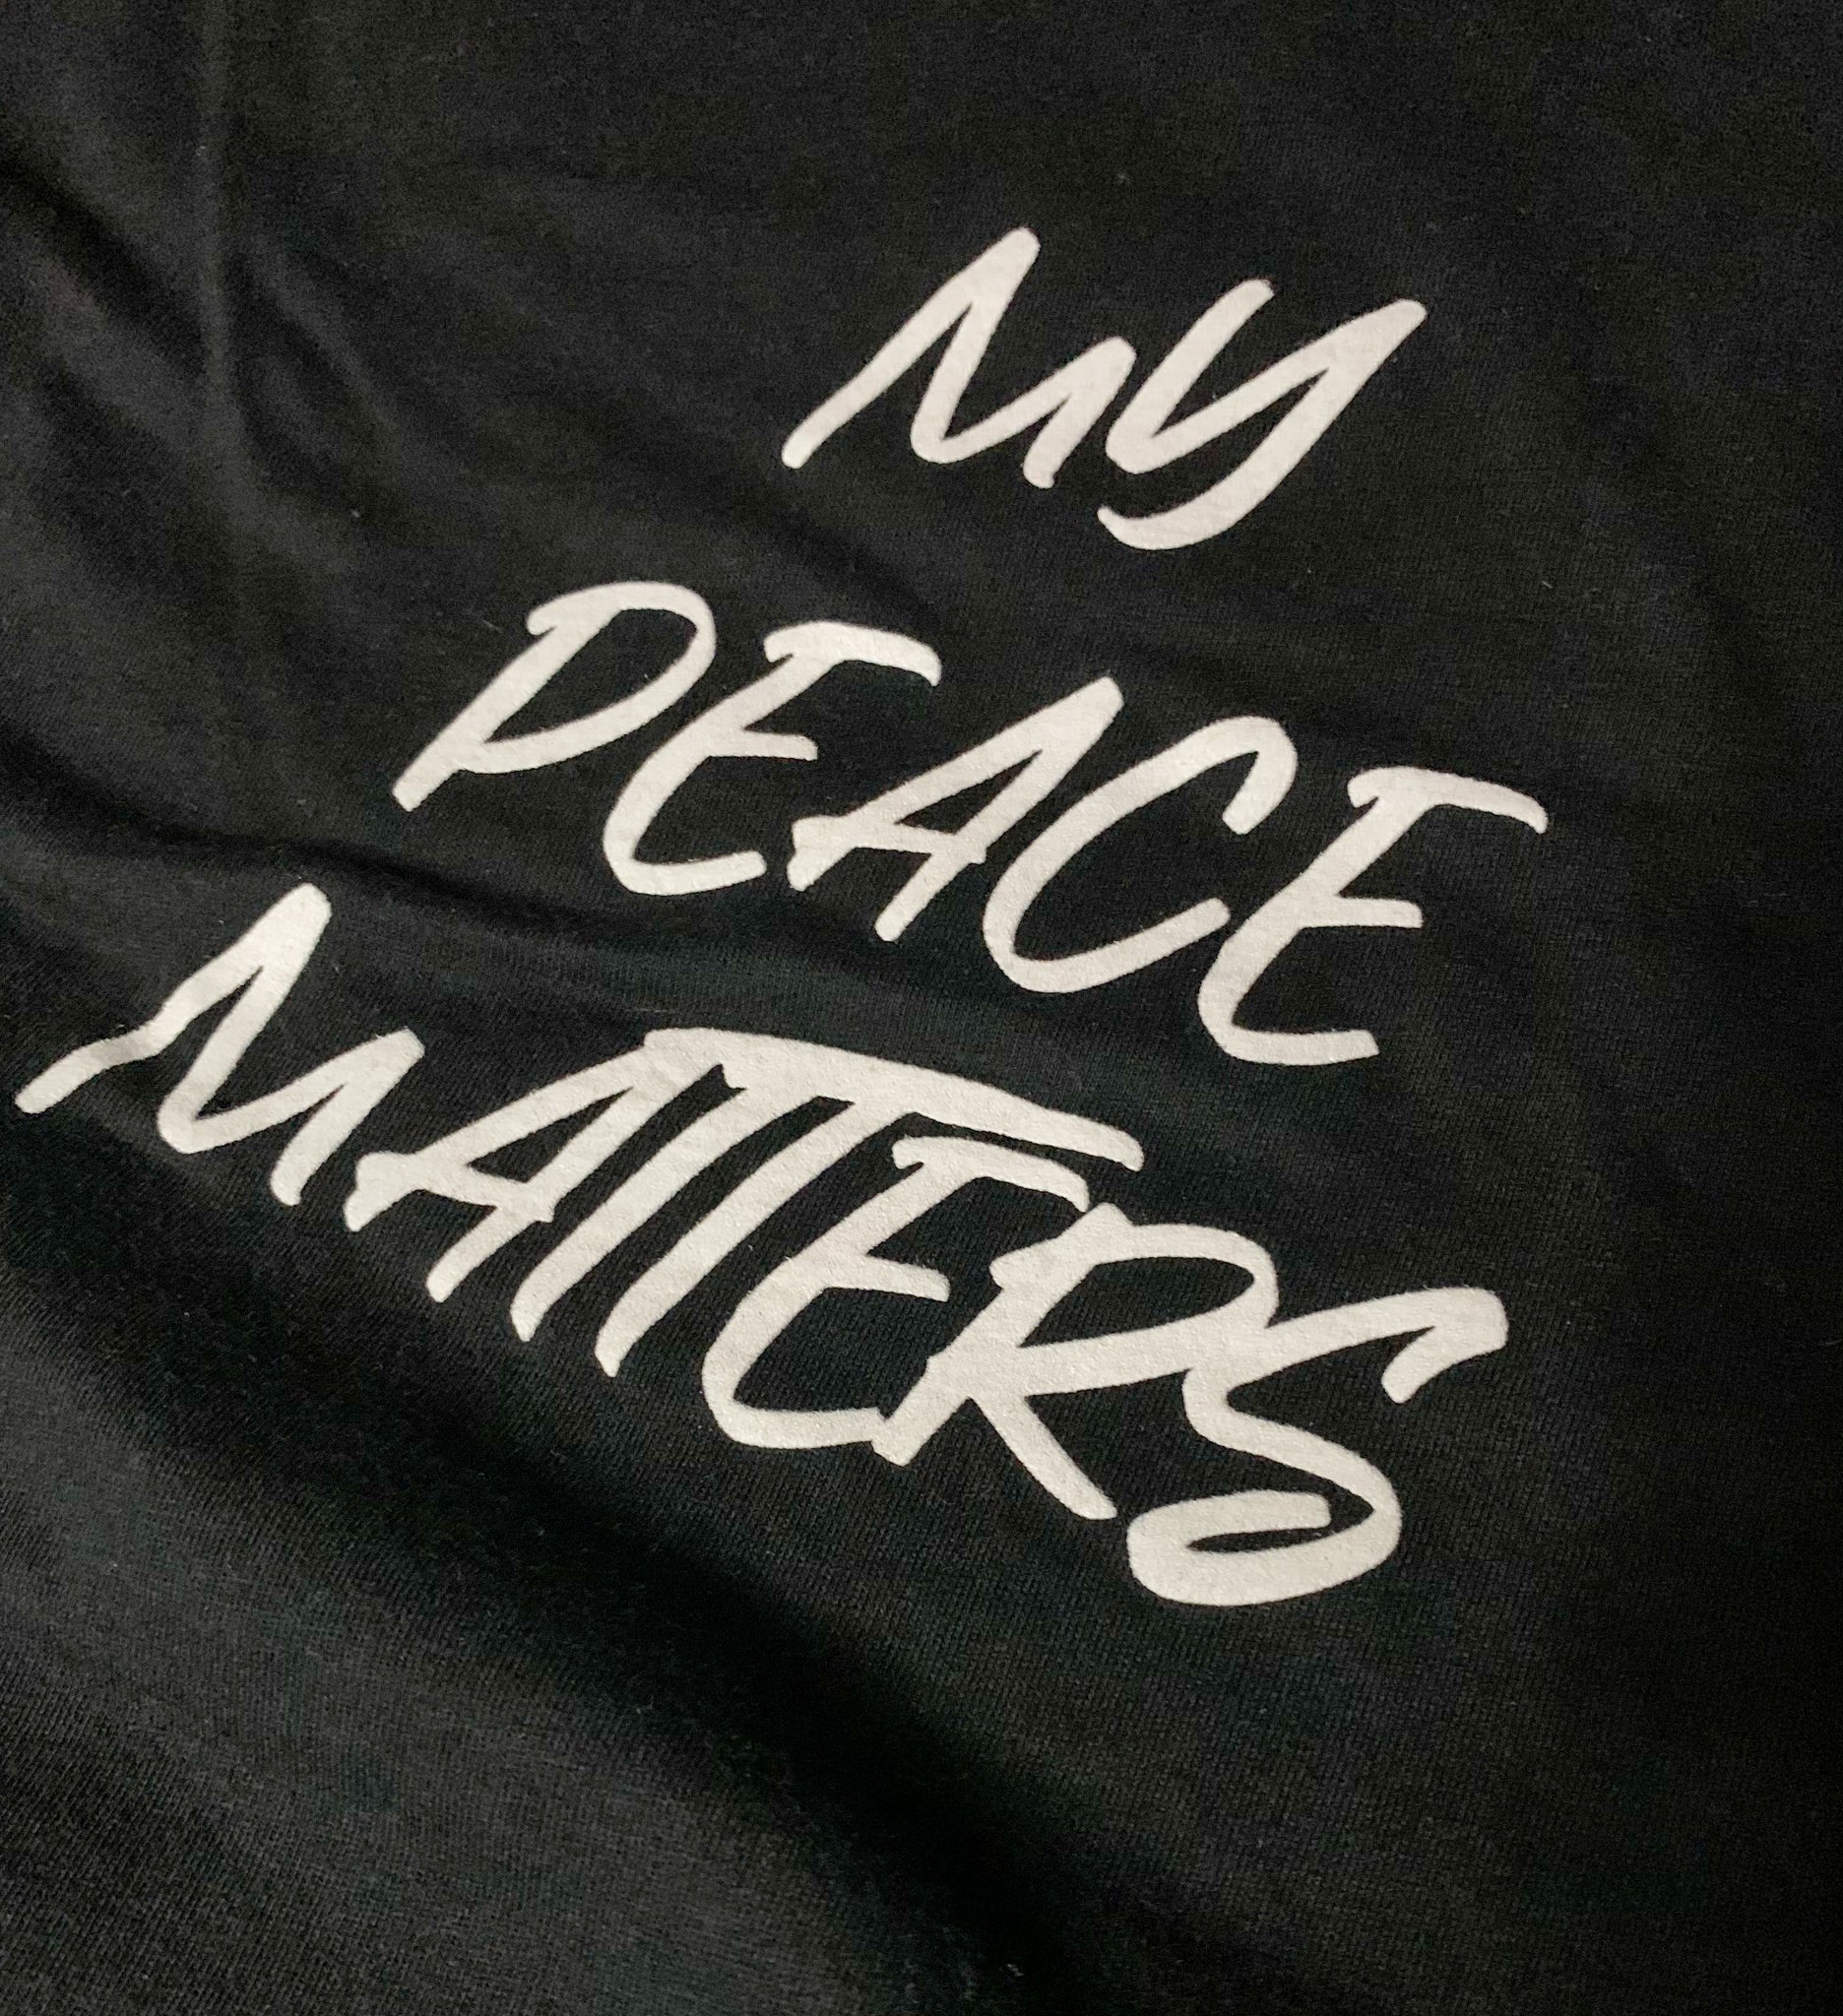 “My Peace Matters” T-Shirt